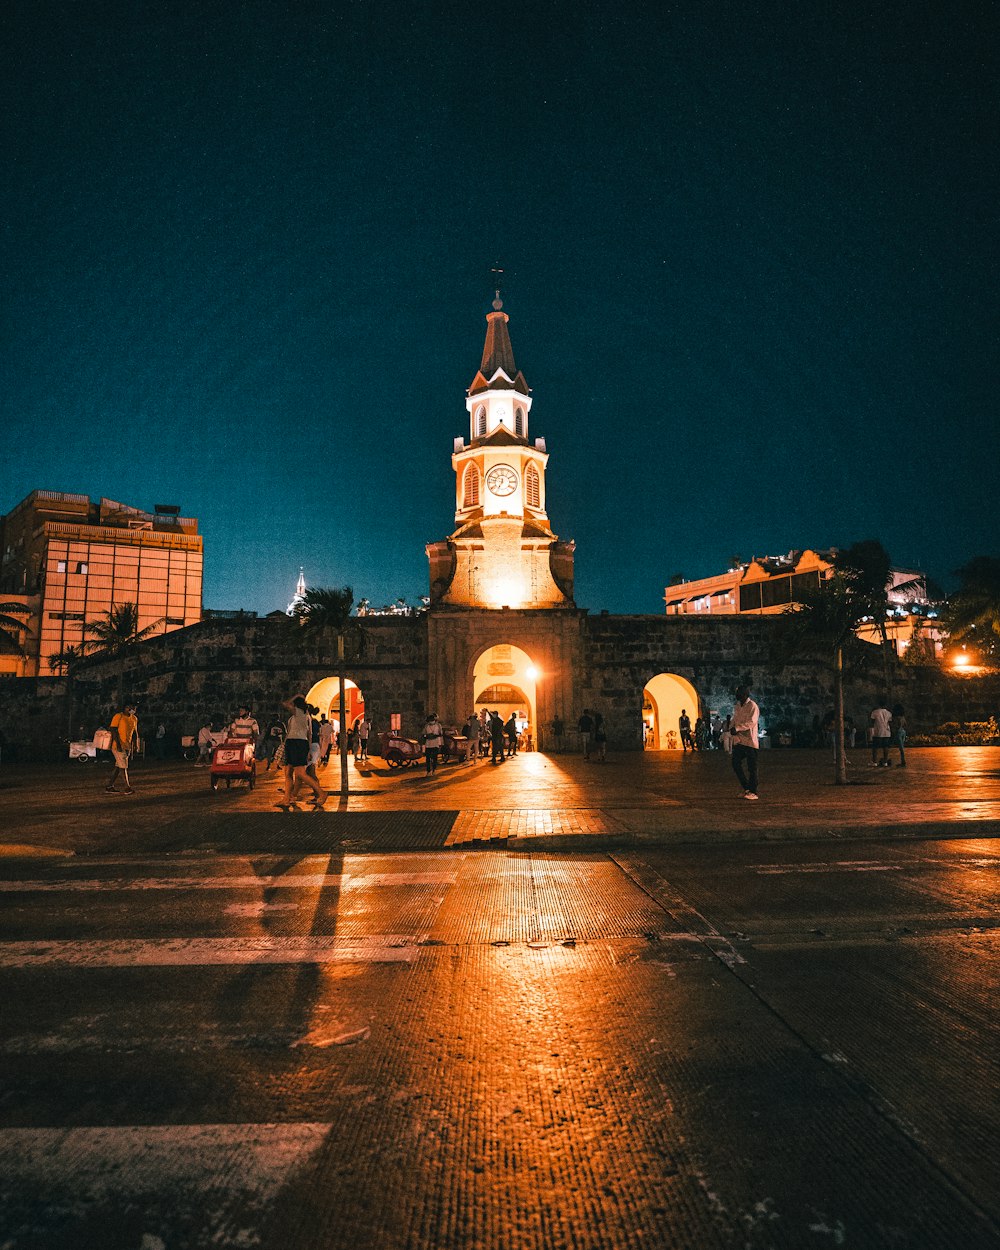 Una torre del reloj iluminada por la noche en una ciudad